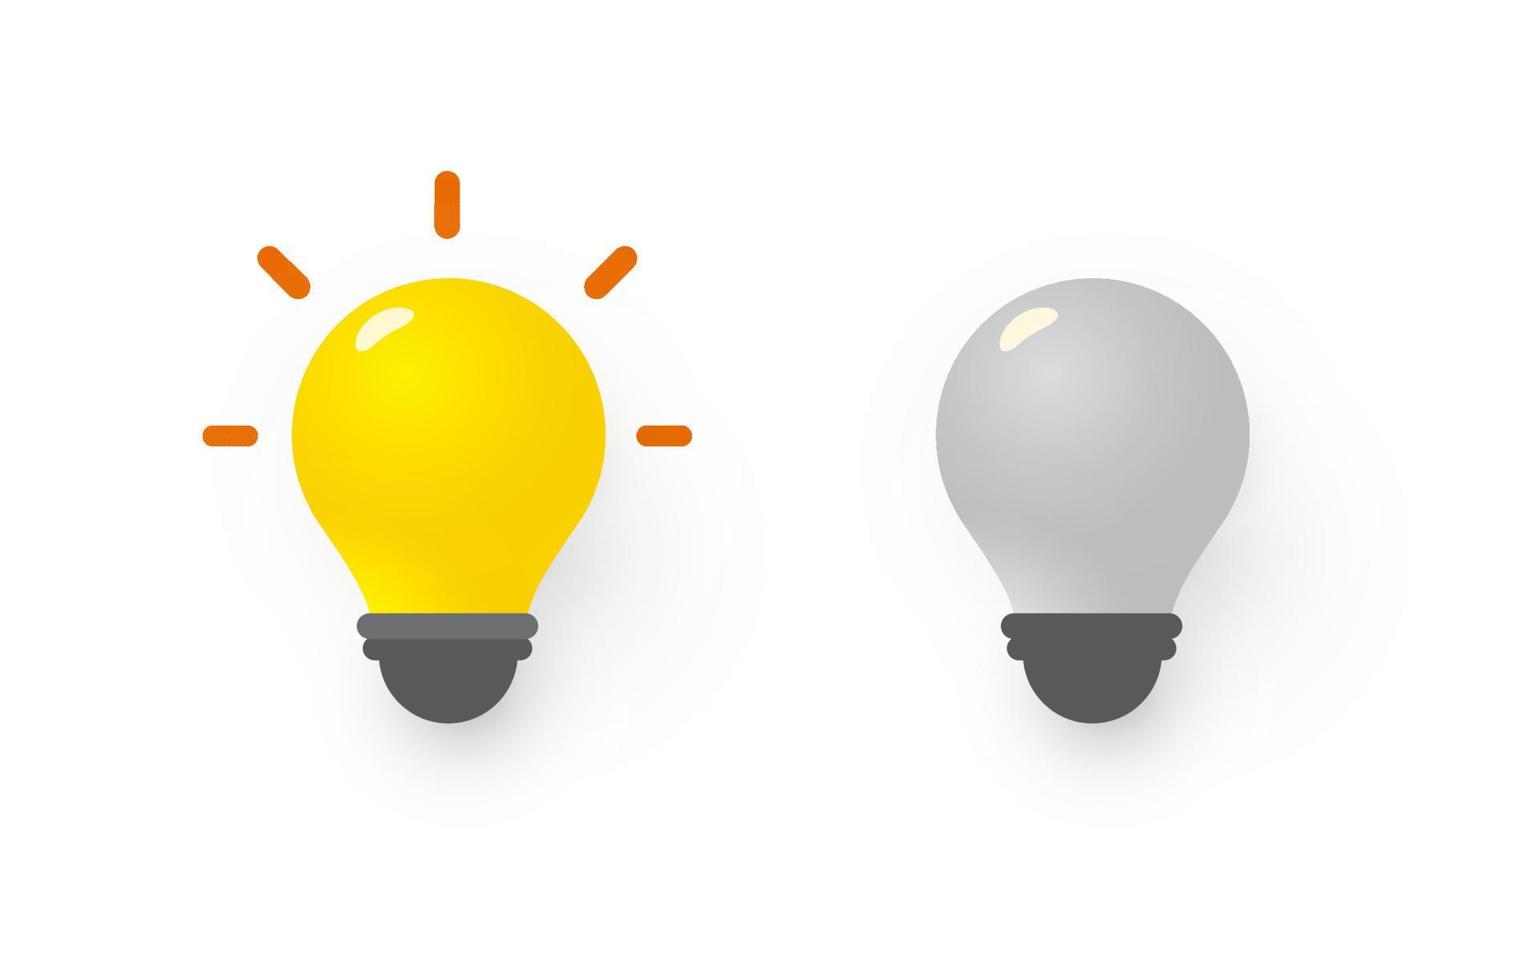 gelbe Glühbirne an, neues Ideensymbol. graue Glühbirne aus, Ideenlosigkeitssymbol. flache 3D-Vektorillustration. vektor